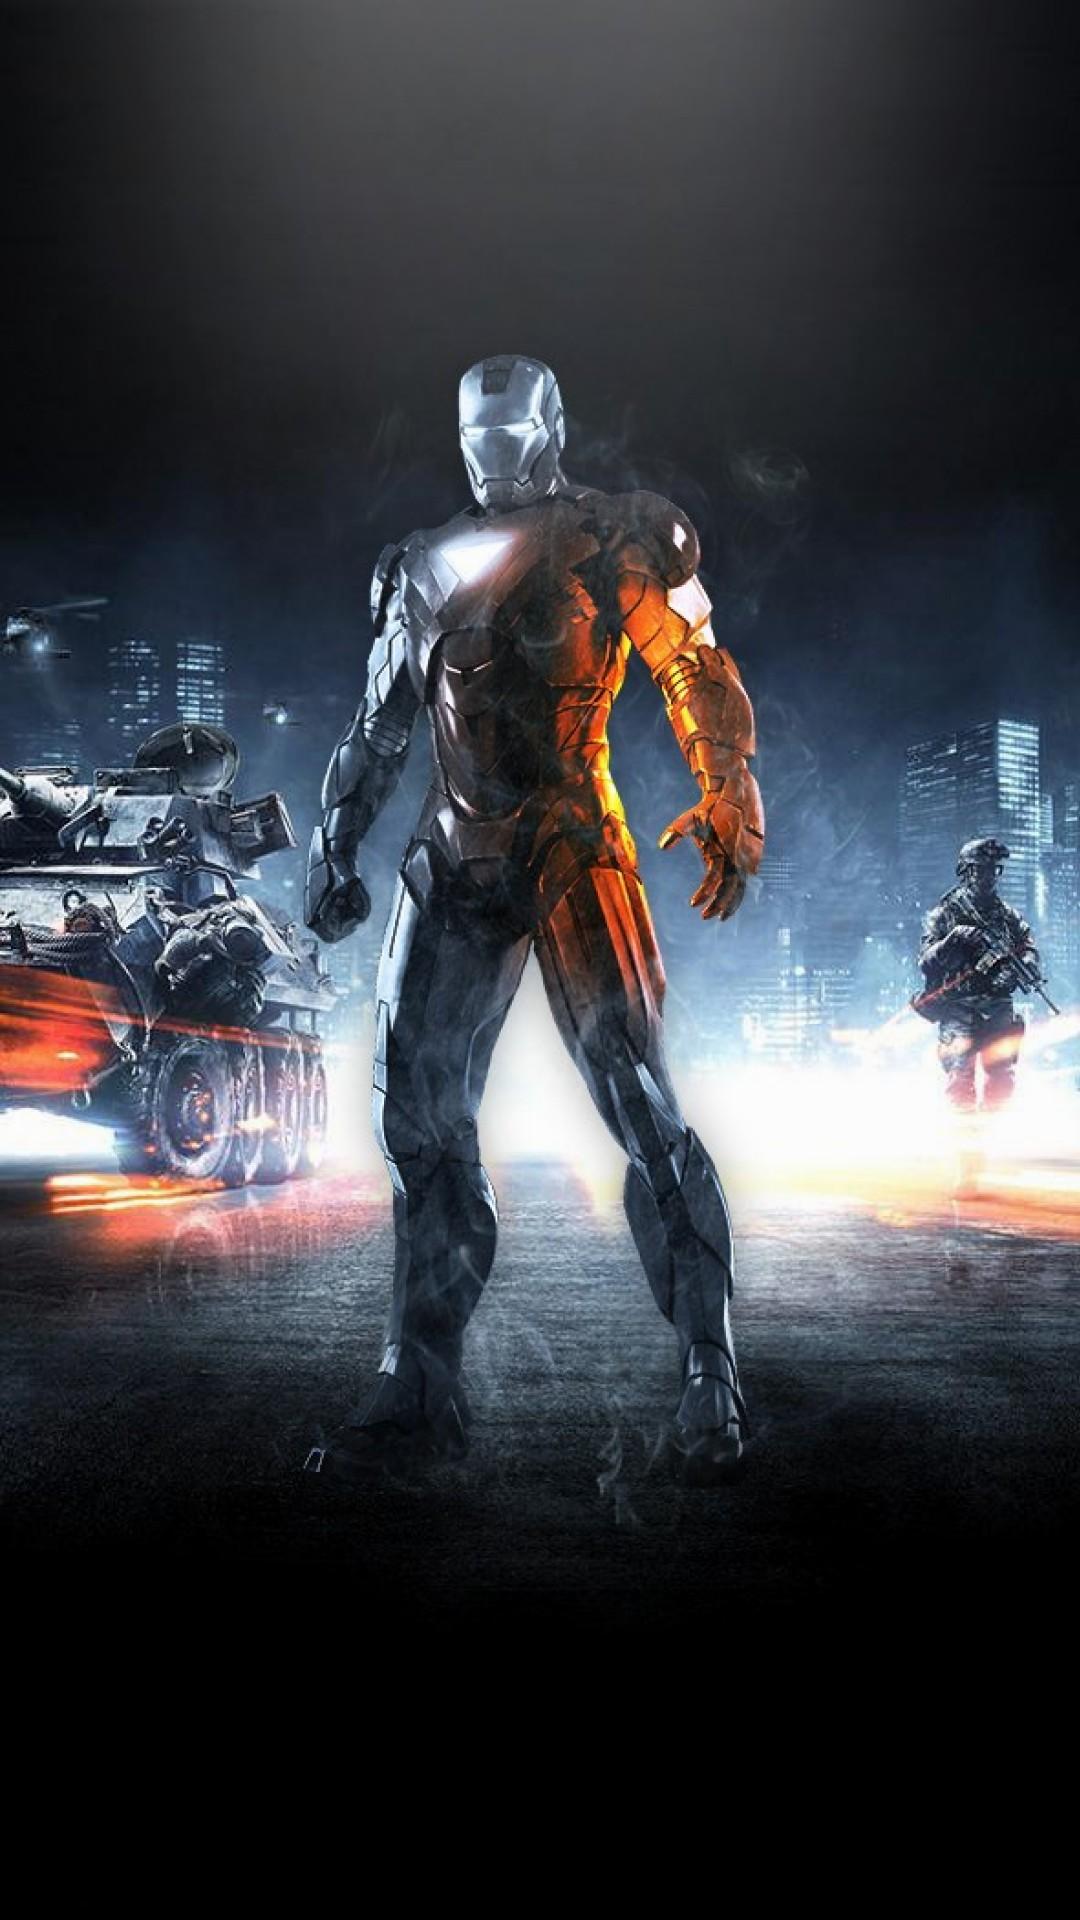 iron man wallpaper für android,action adventure spiel,erfundener charakter,film,superheld,actionfilm